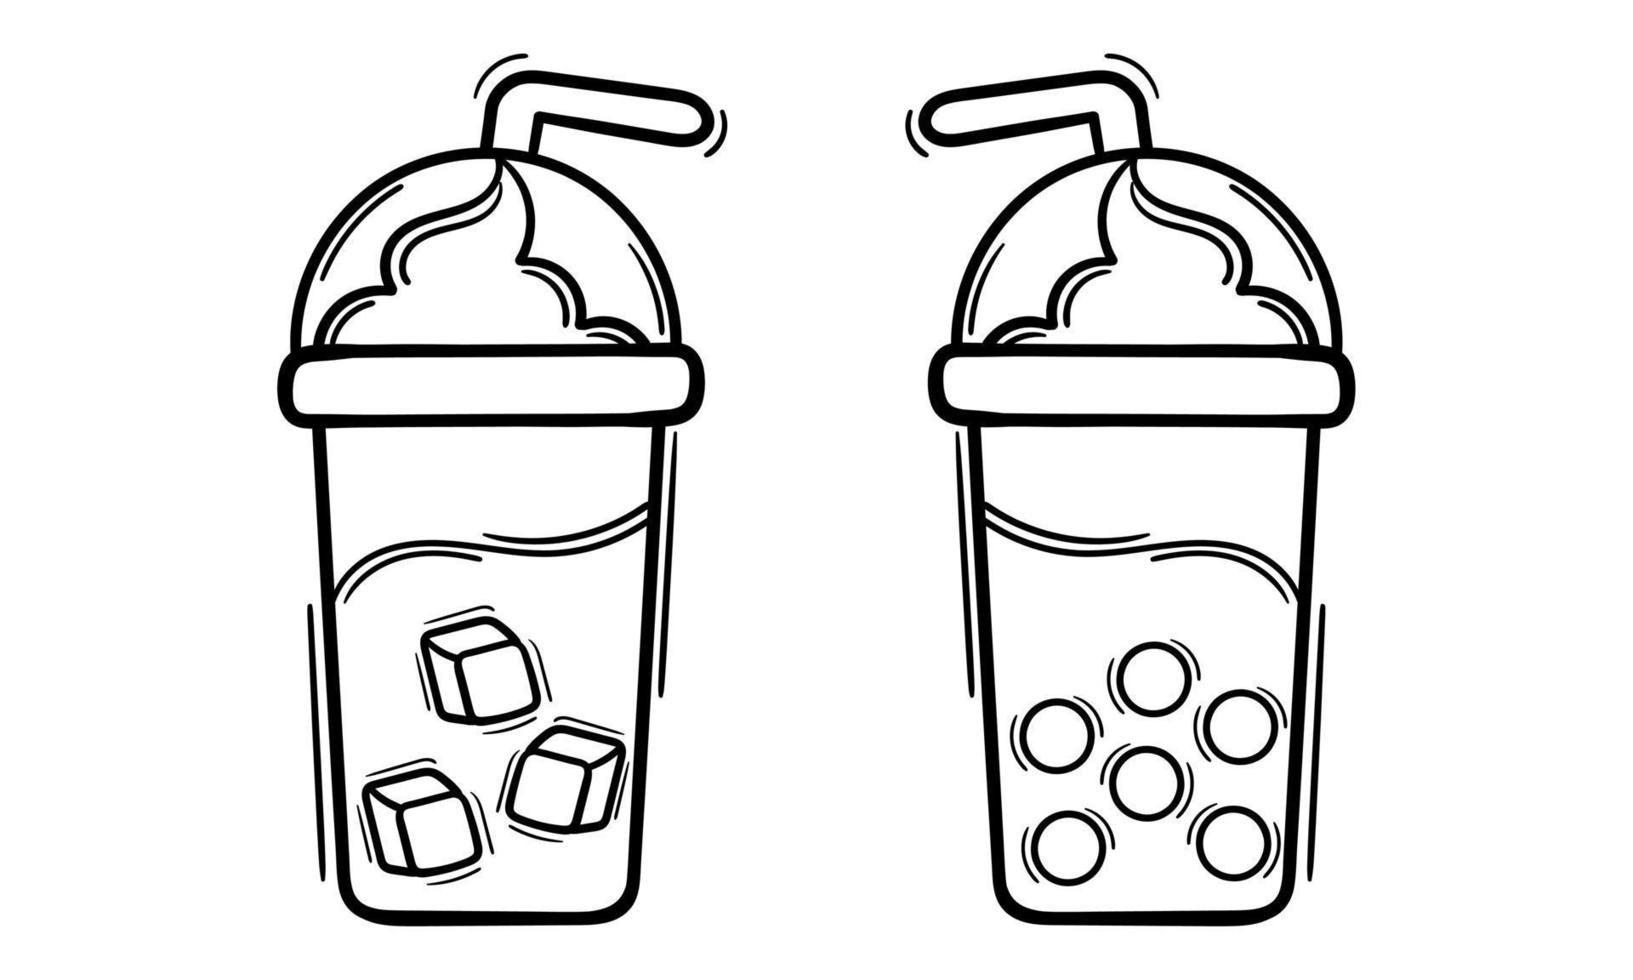 boba drink outline illustration vector